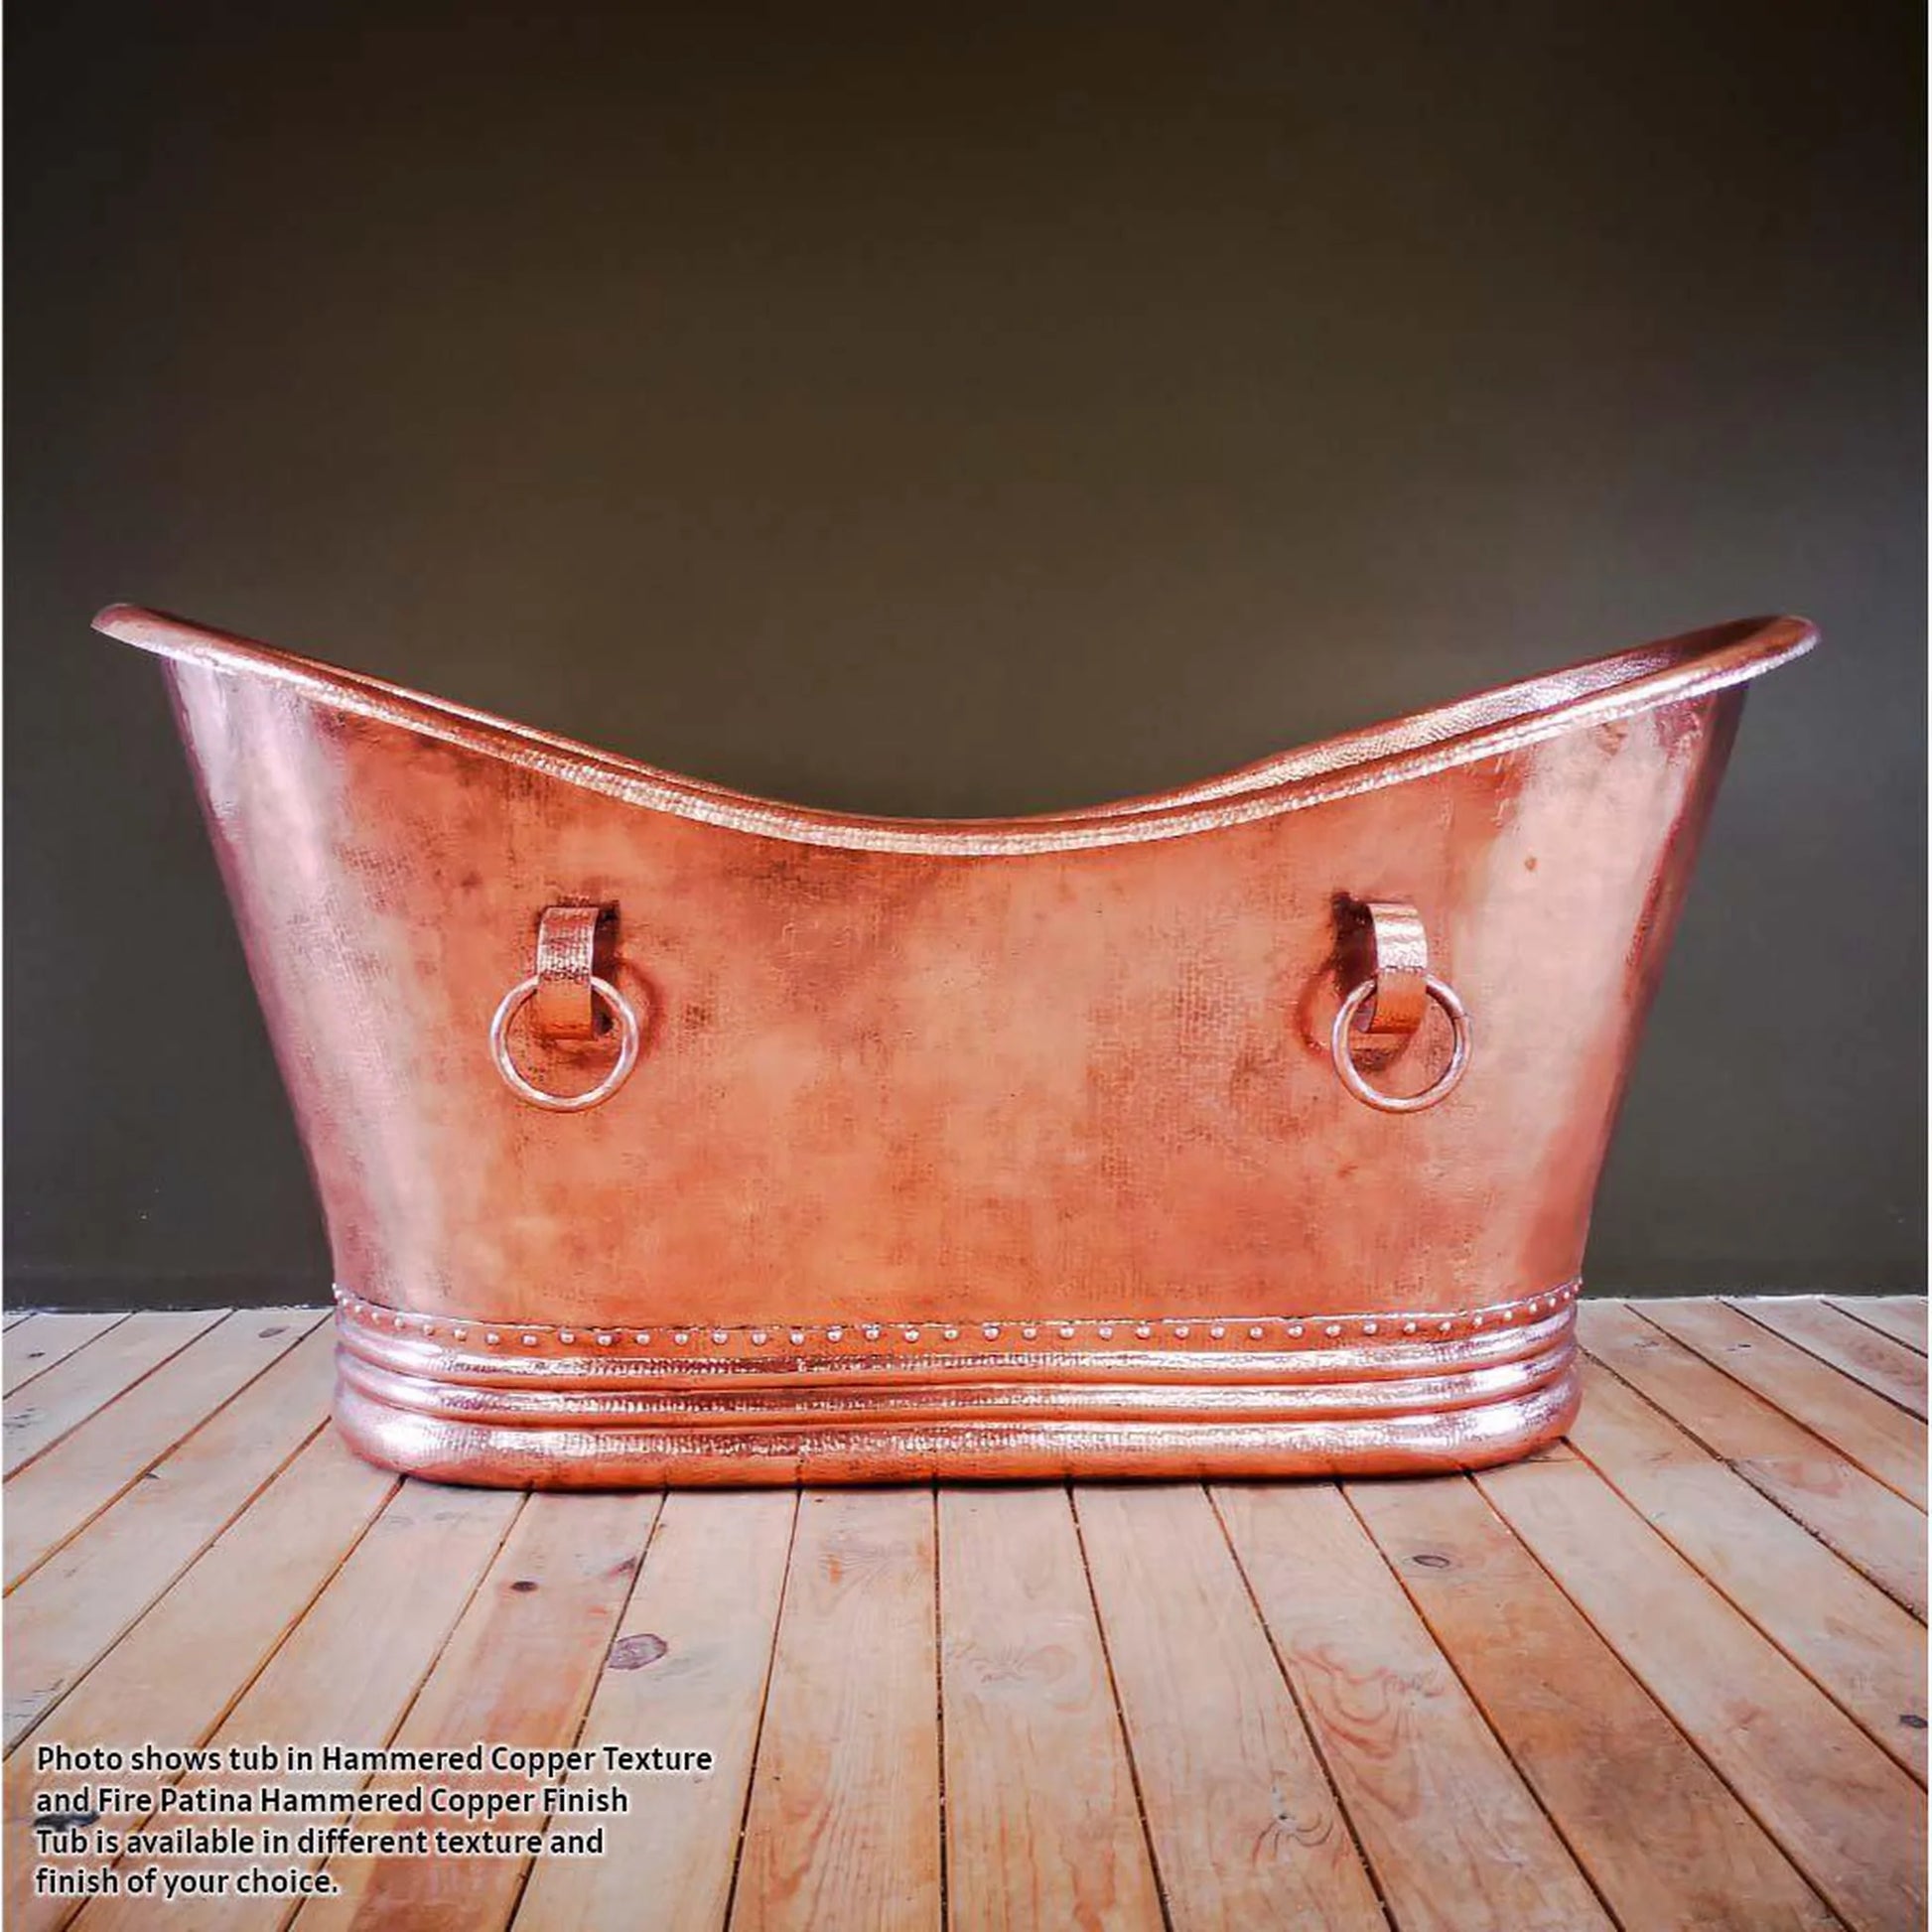 Amoretti Brothers Classica Hammered Copper Freestanding Tub - Sea & Stone Bath